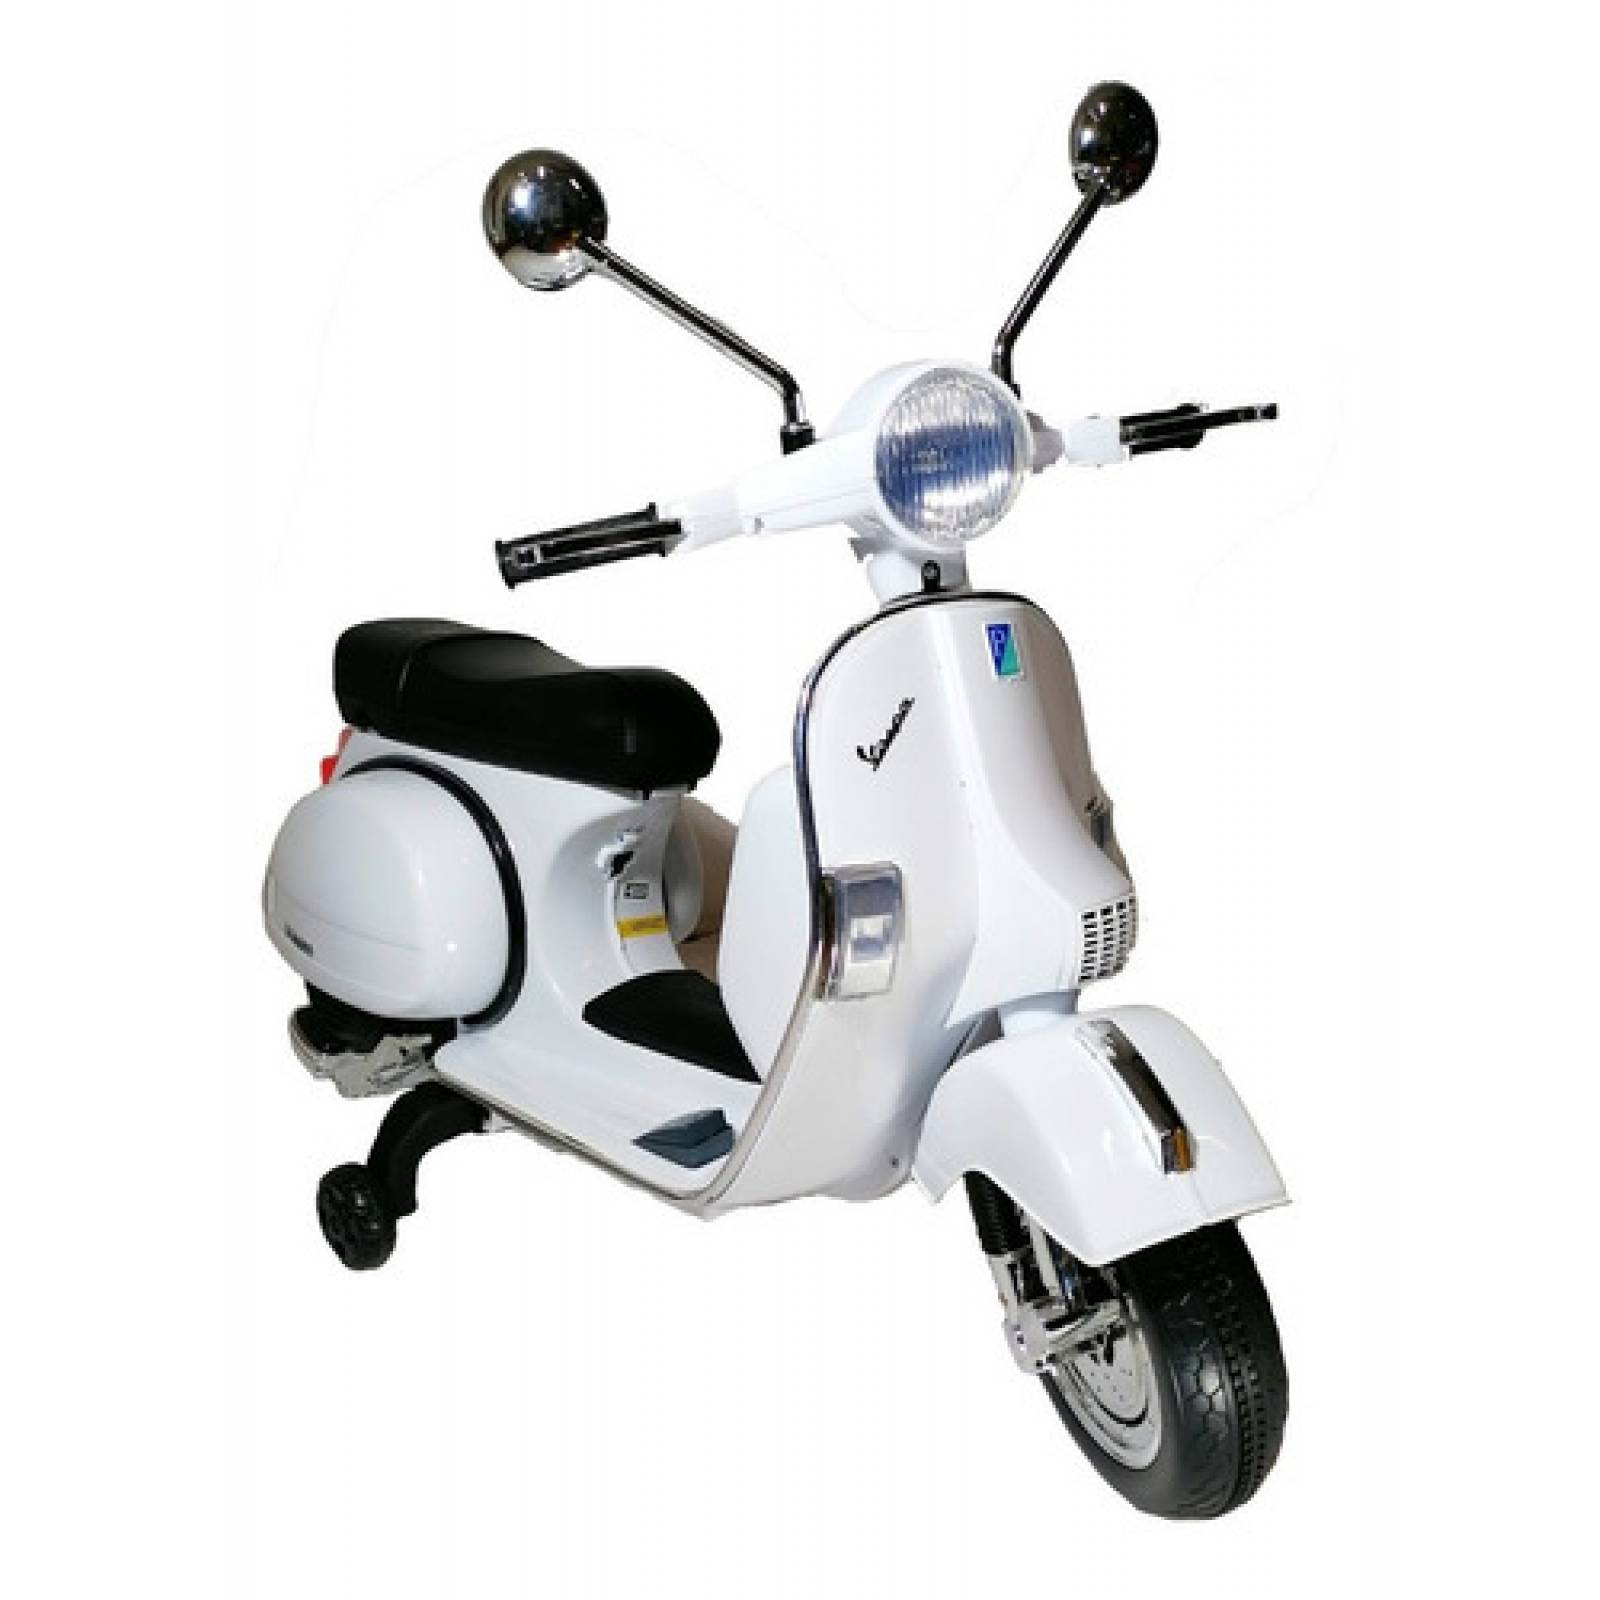 Motocicleta Eléctrica Vespa Blanca Niños 3-6 Años